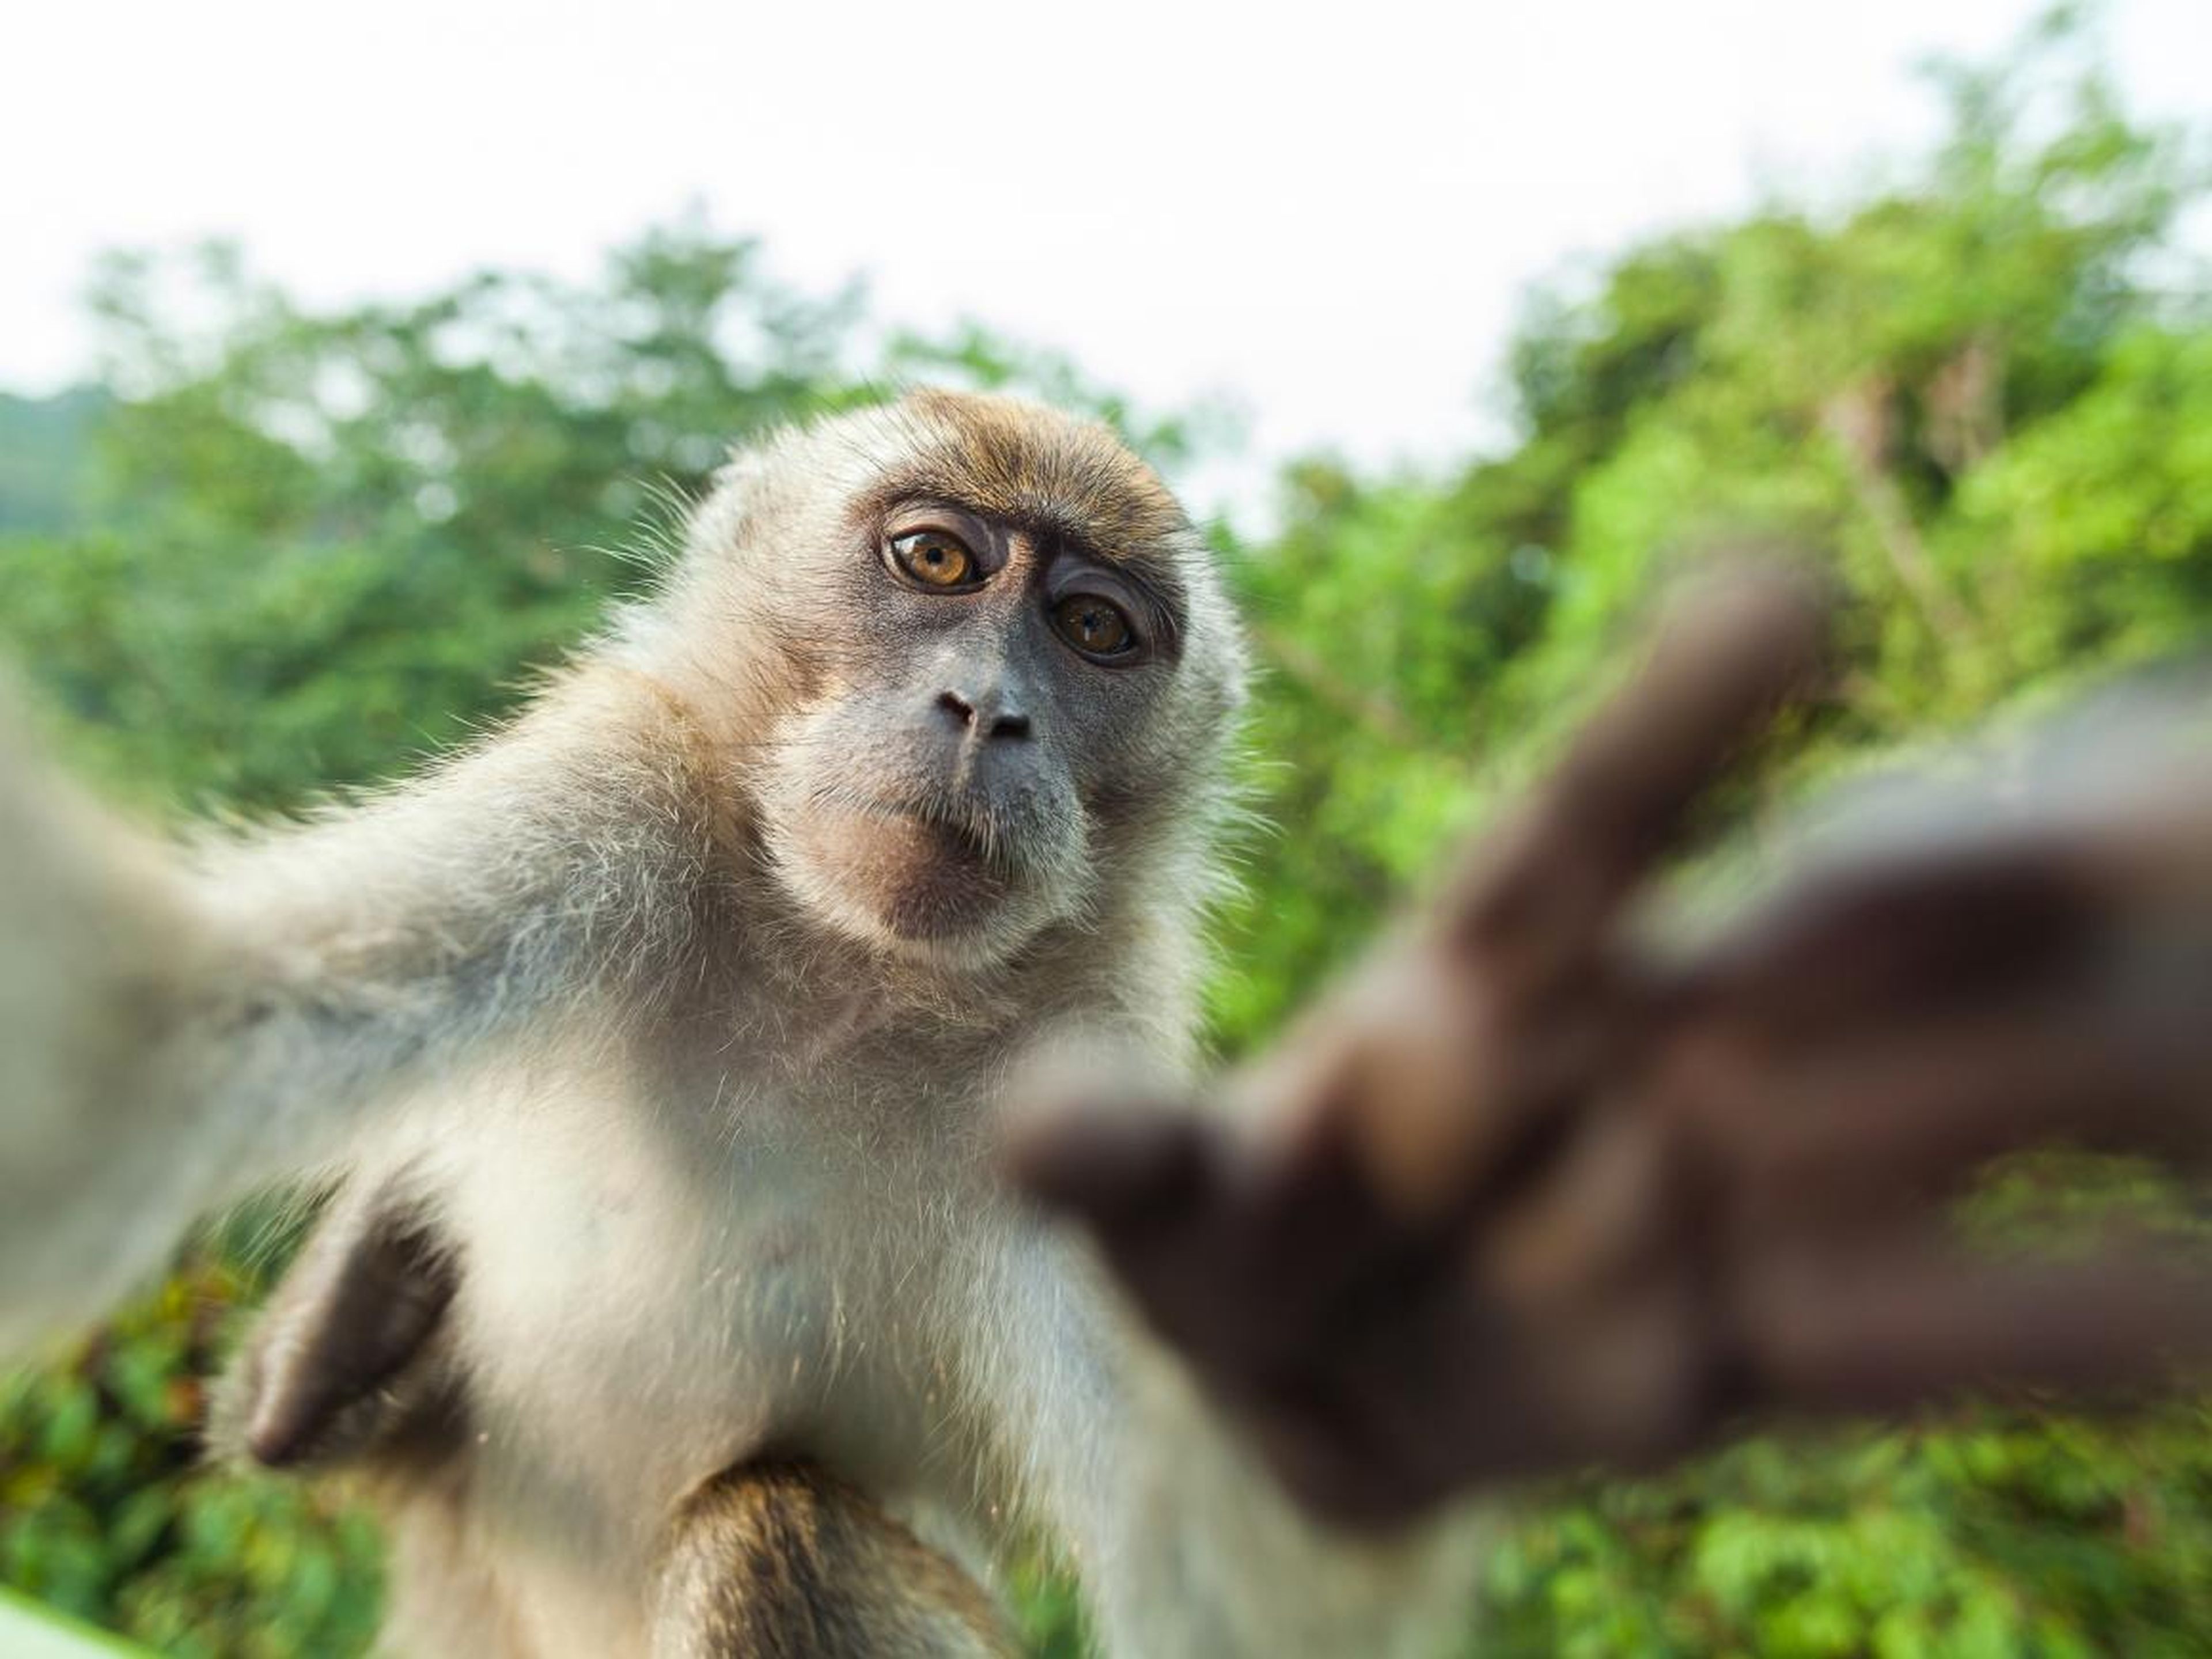 ¿Qué pasa que solo pueden hacerse selfies los humanos? Este mono demuestra que él también es capaz.